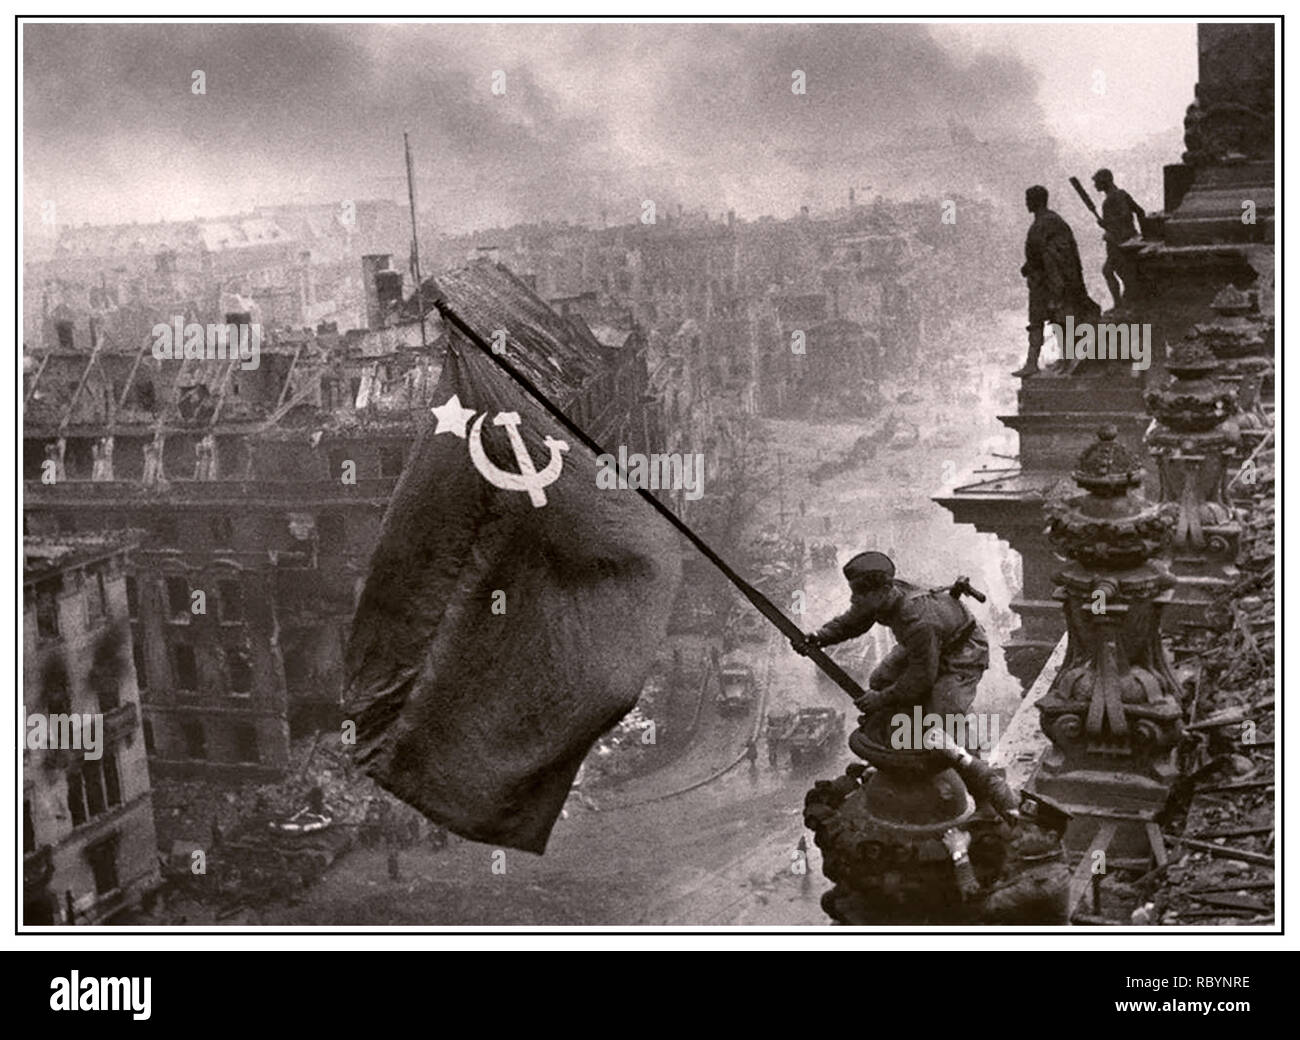 Esercito Russo bandiera sovietica su Berlino REICHSTAG II guerra mondiale  la Germania immagine iconica di innalzare un Soviet russo bandiera oltre il  Reichstag, una storica Guerra Mondiale II fotografia presa durante la